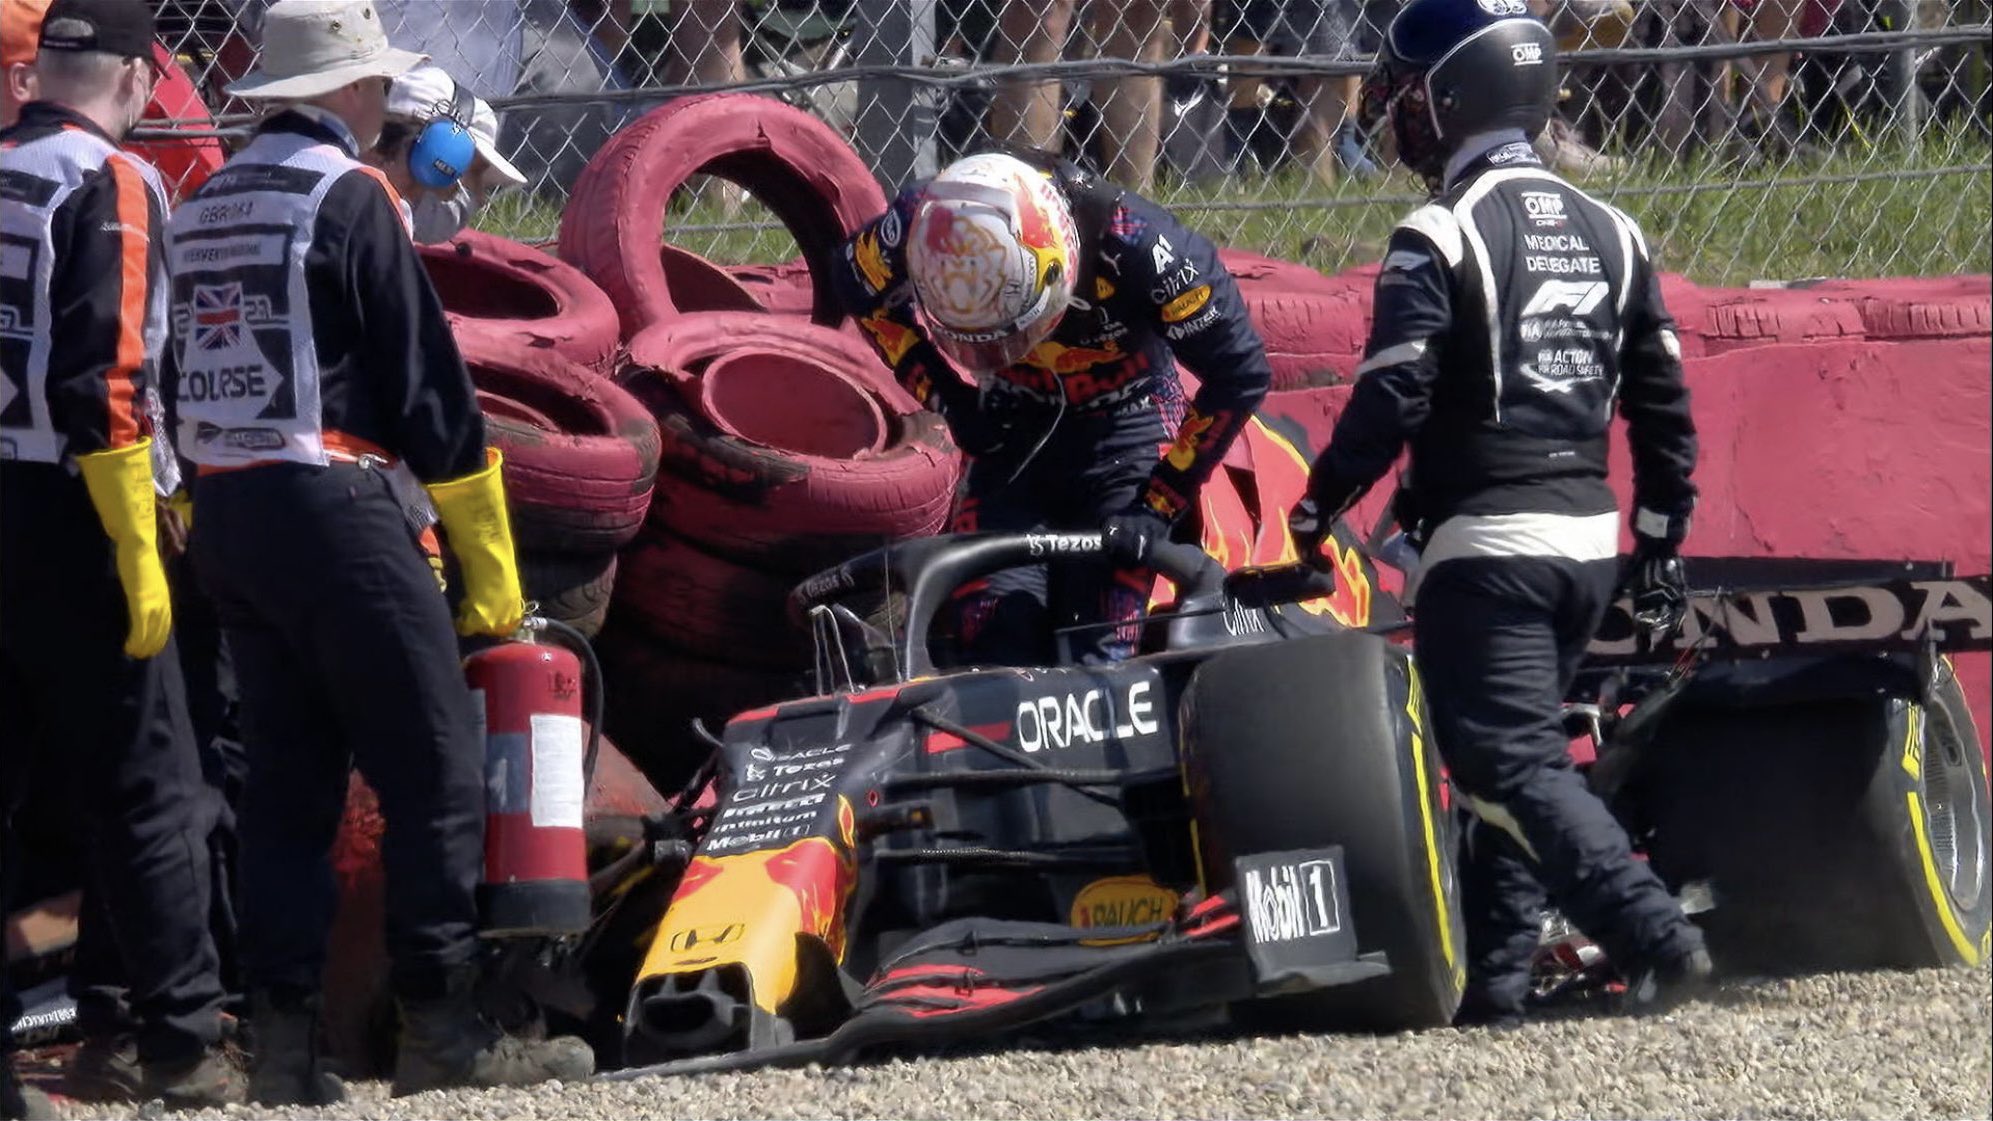 F1 - Le casque que portait Verstappen à Silverstone lors de son crash exposé